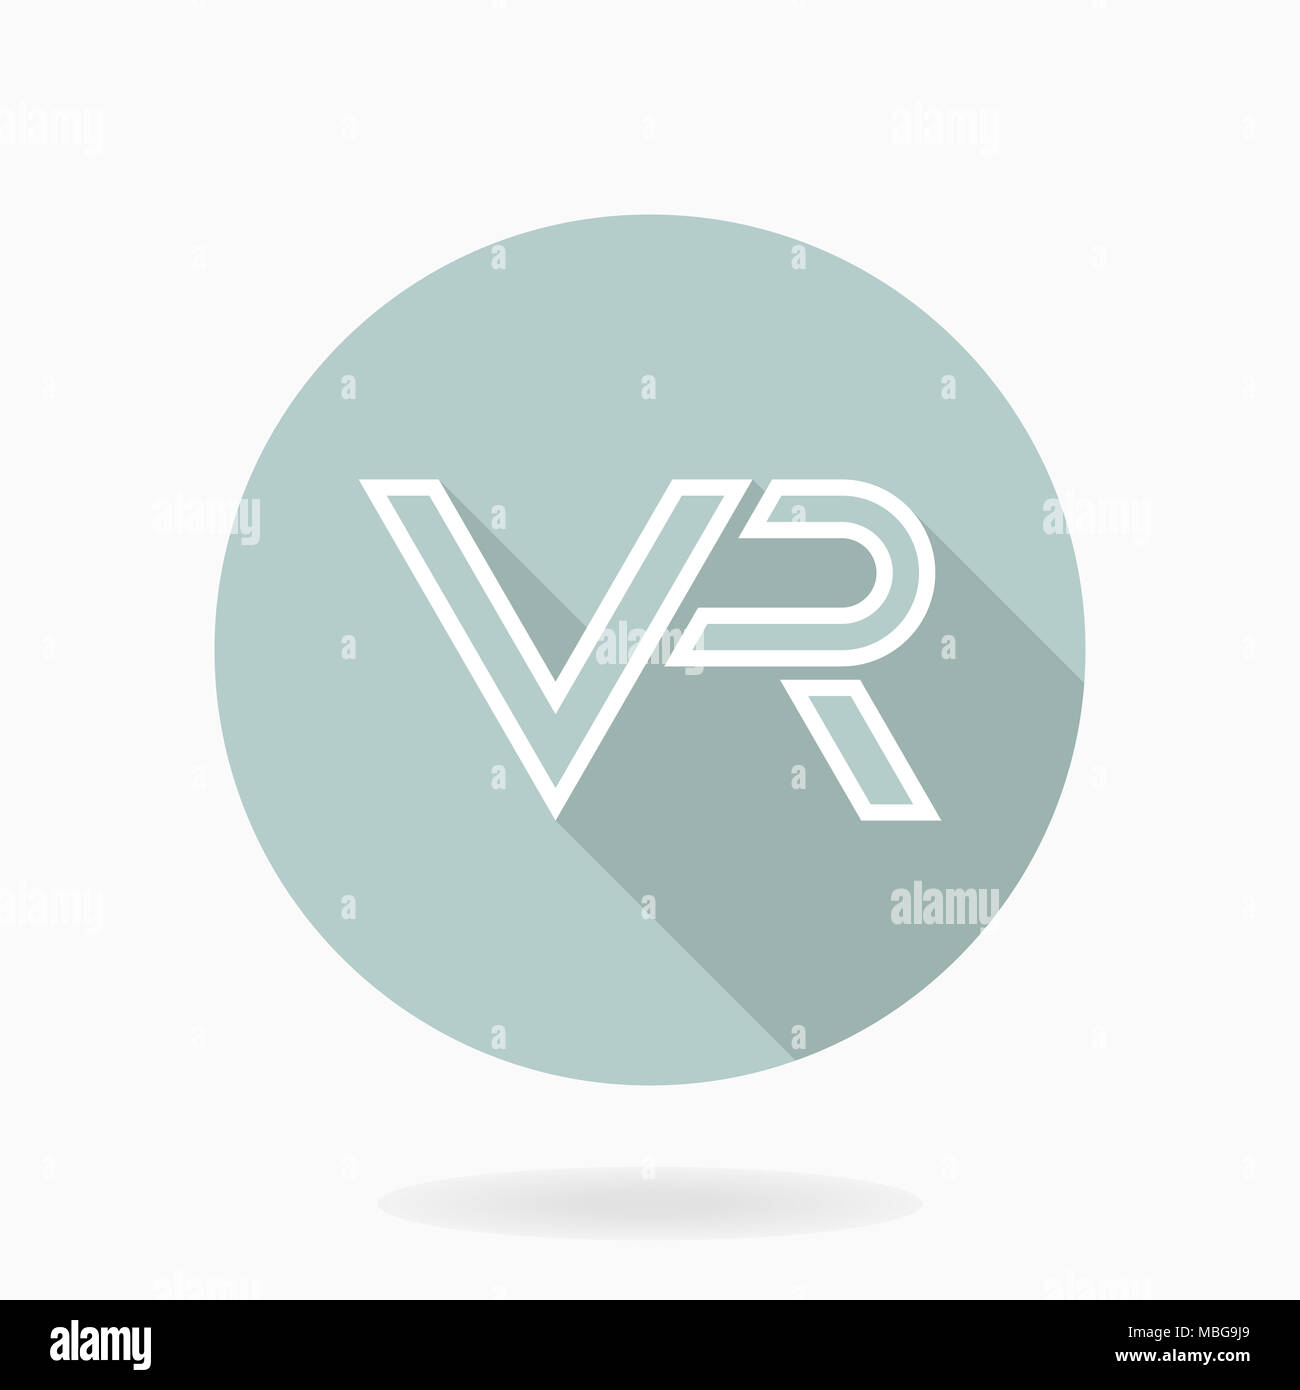 Icona bianca con logo VR nel cerchio blu. Design piatto con lunga ombra. La realtà virtuale logo Foto Stock